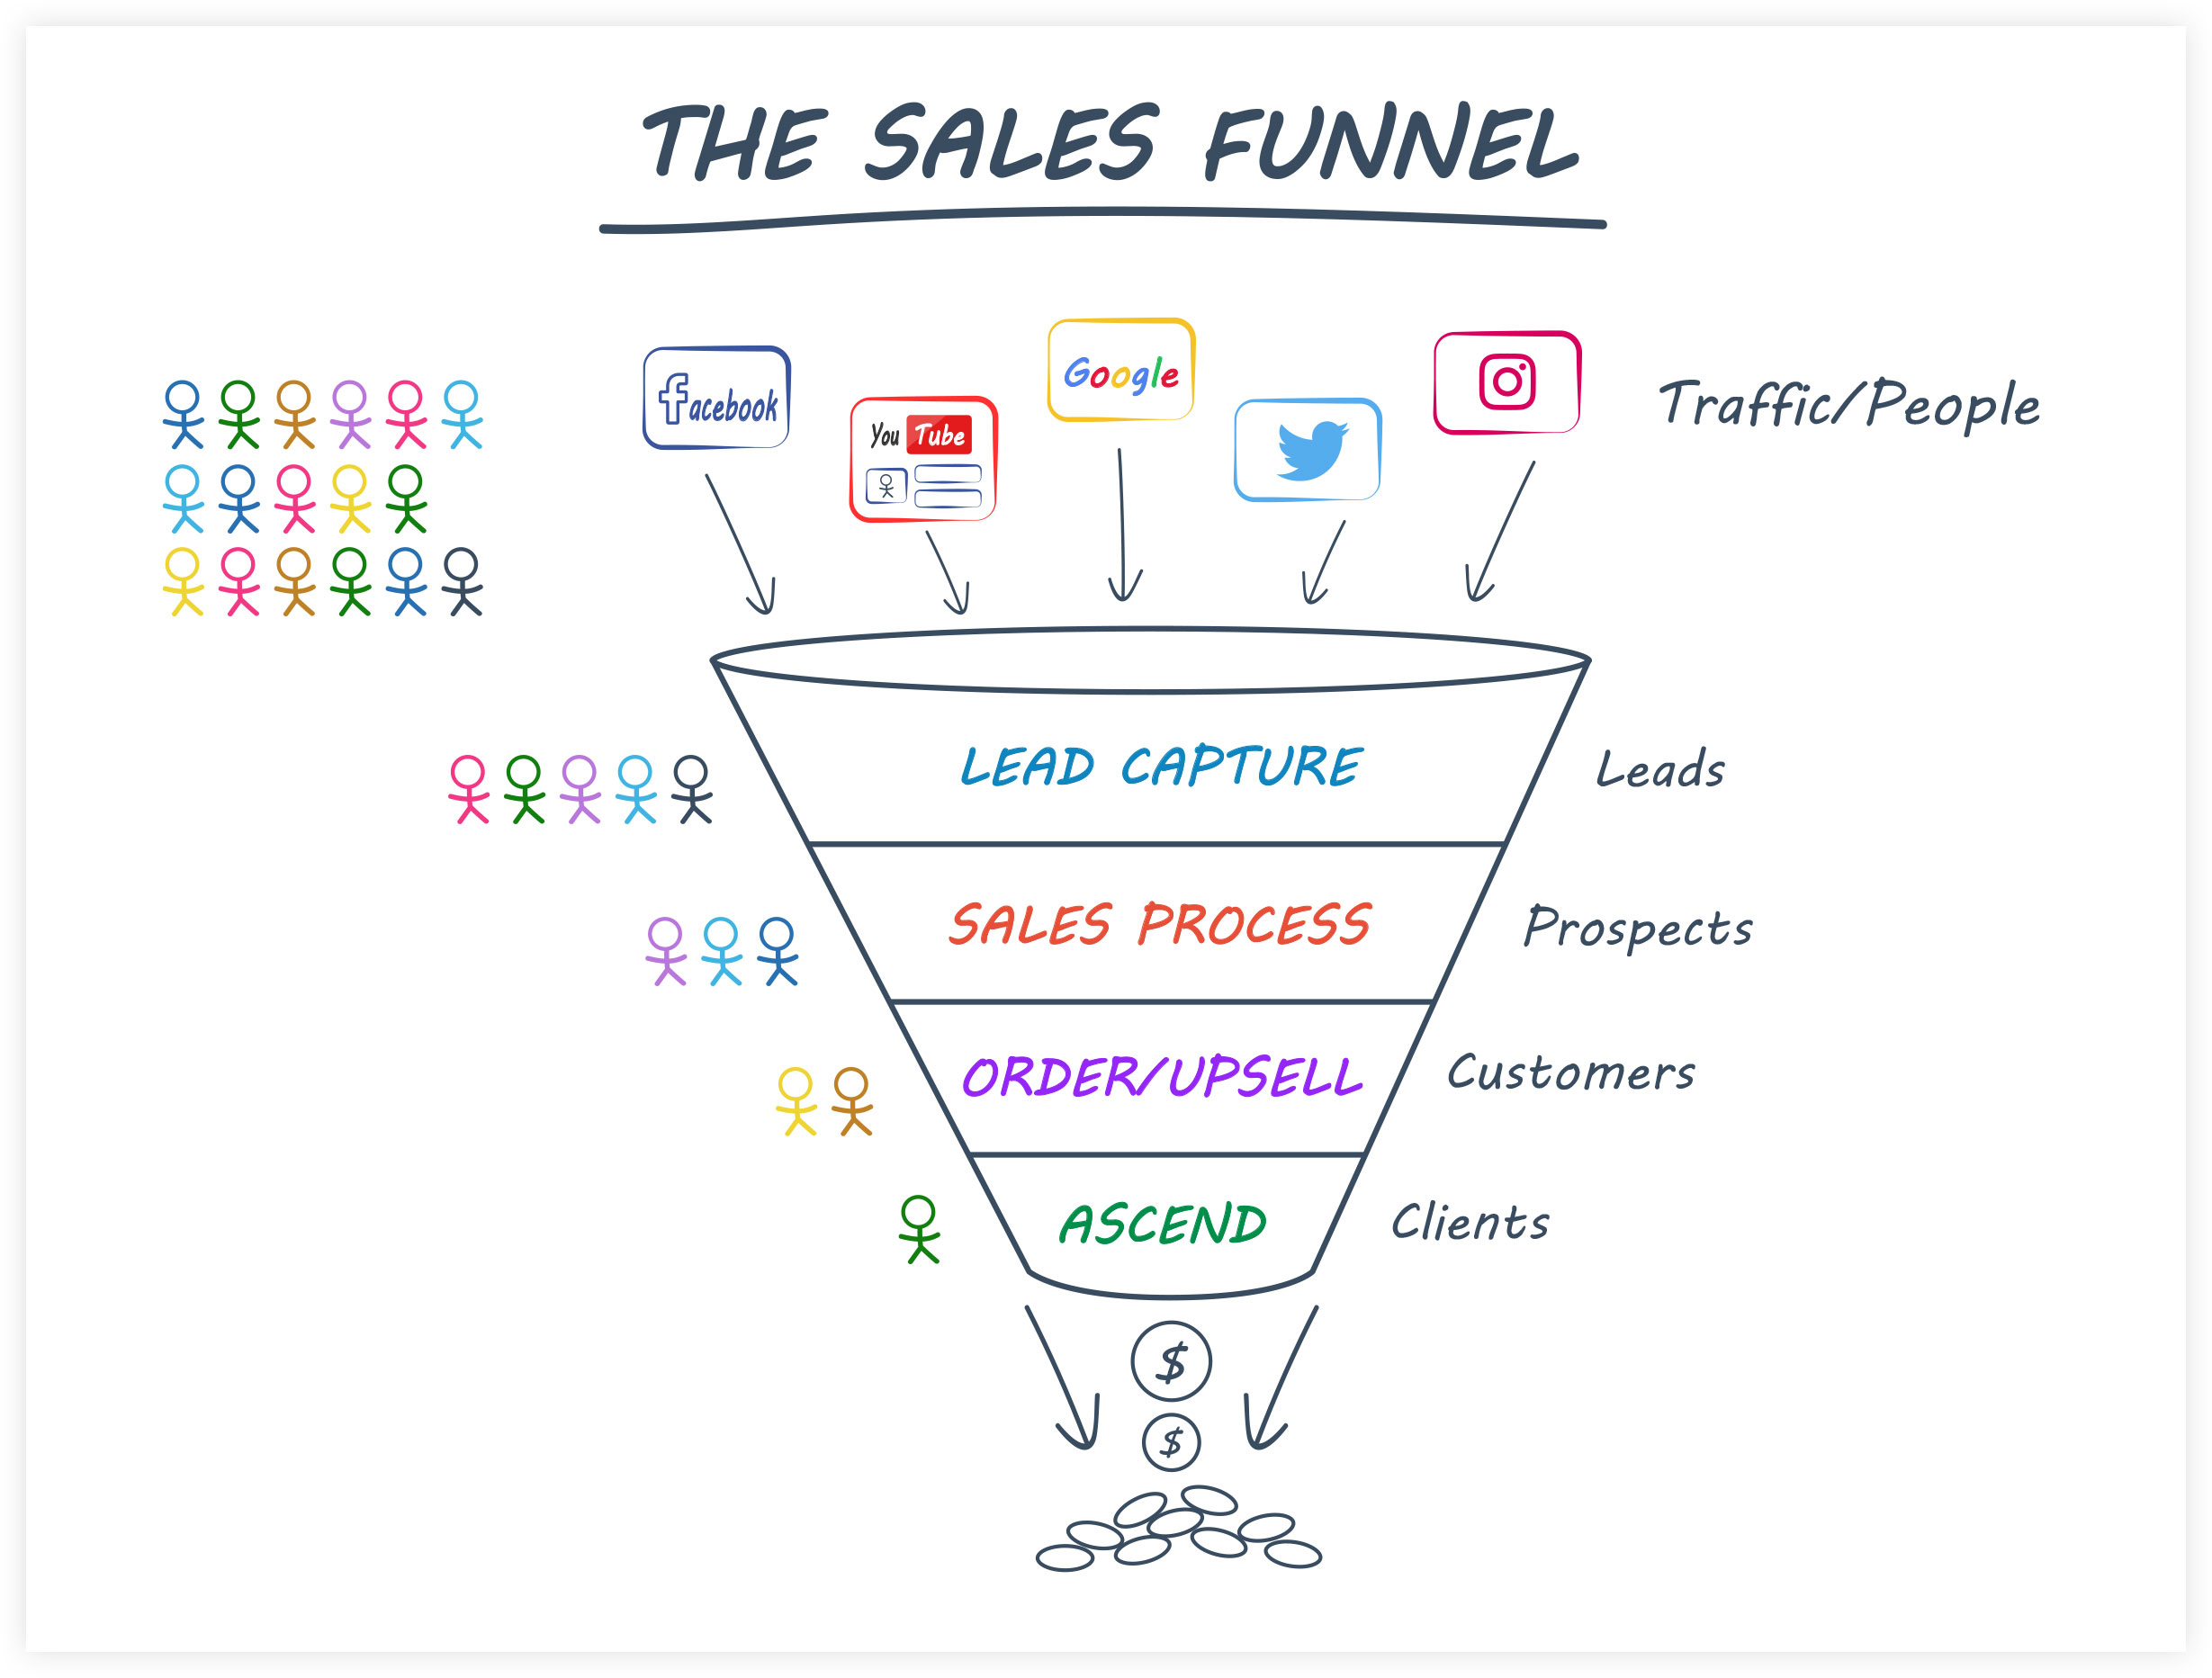 Sales funnel flow diagram